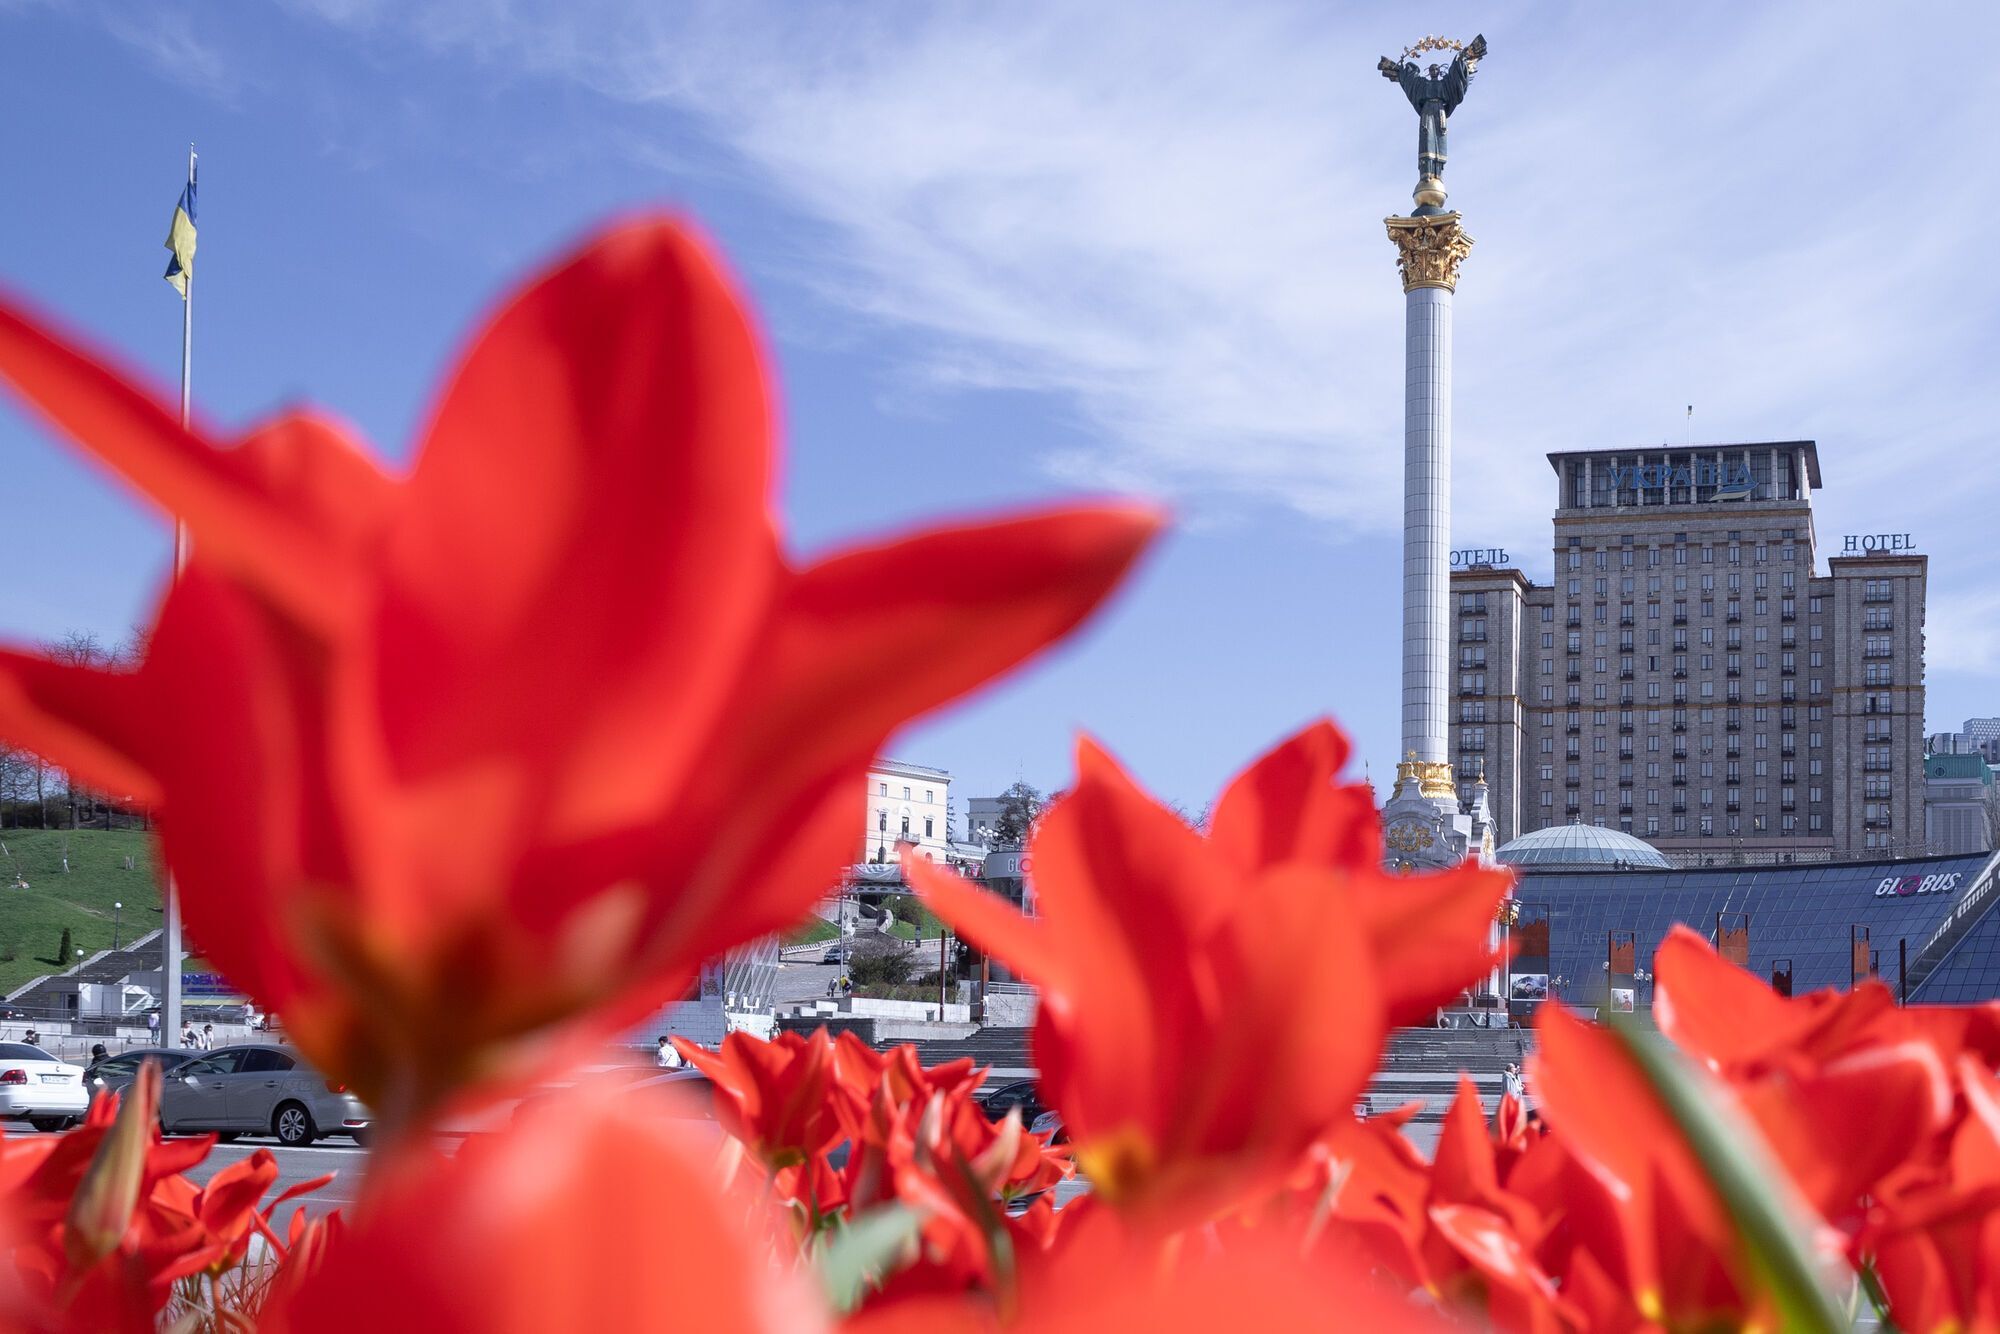 В Киеве начали цвести тюльпаны: где можно увидеть красоту. Фото